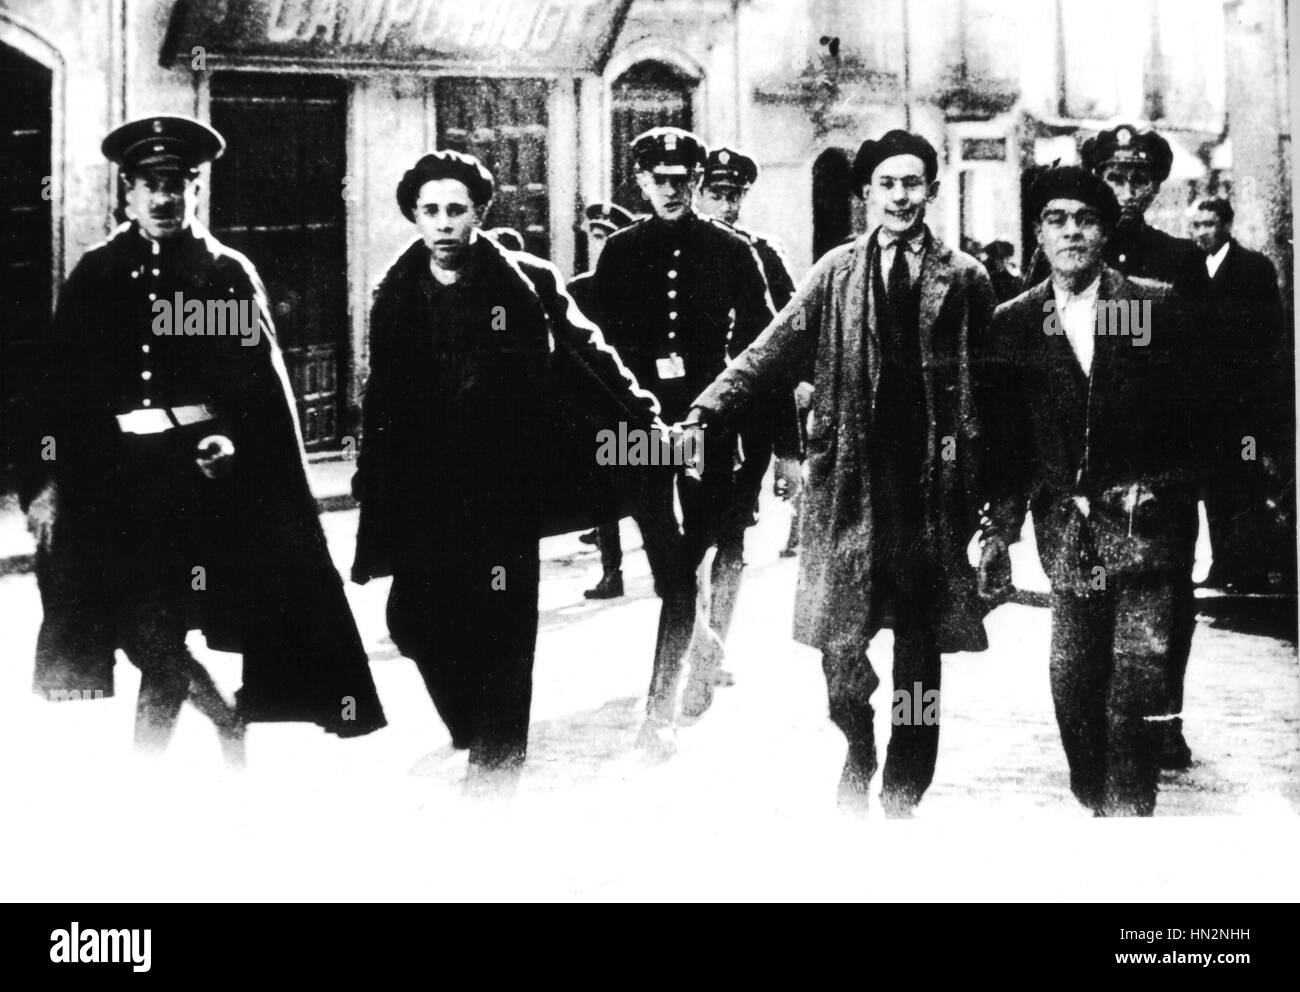 Grève générale à Salamanque, les jeunes travailleurs sont arrêtés Décembre 1932 Espagne Banque D'Images